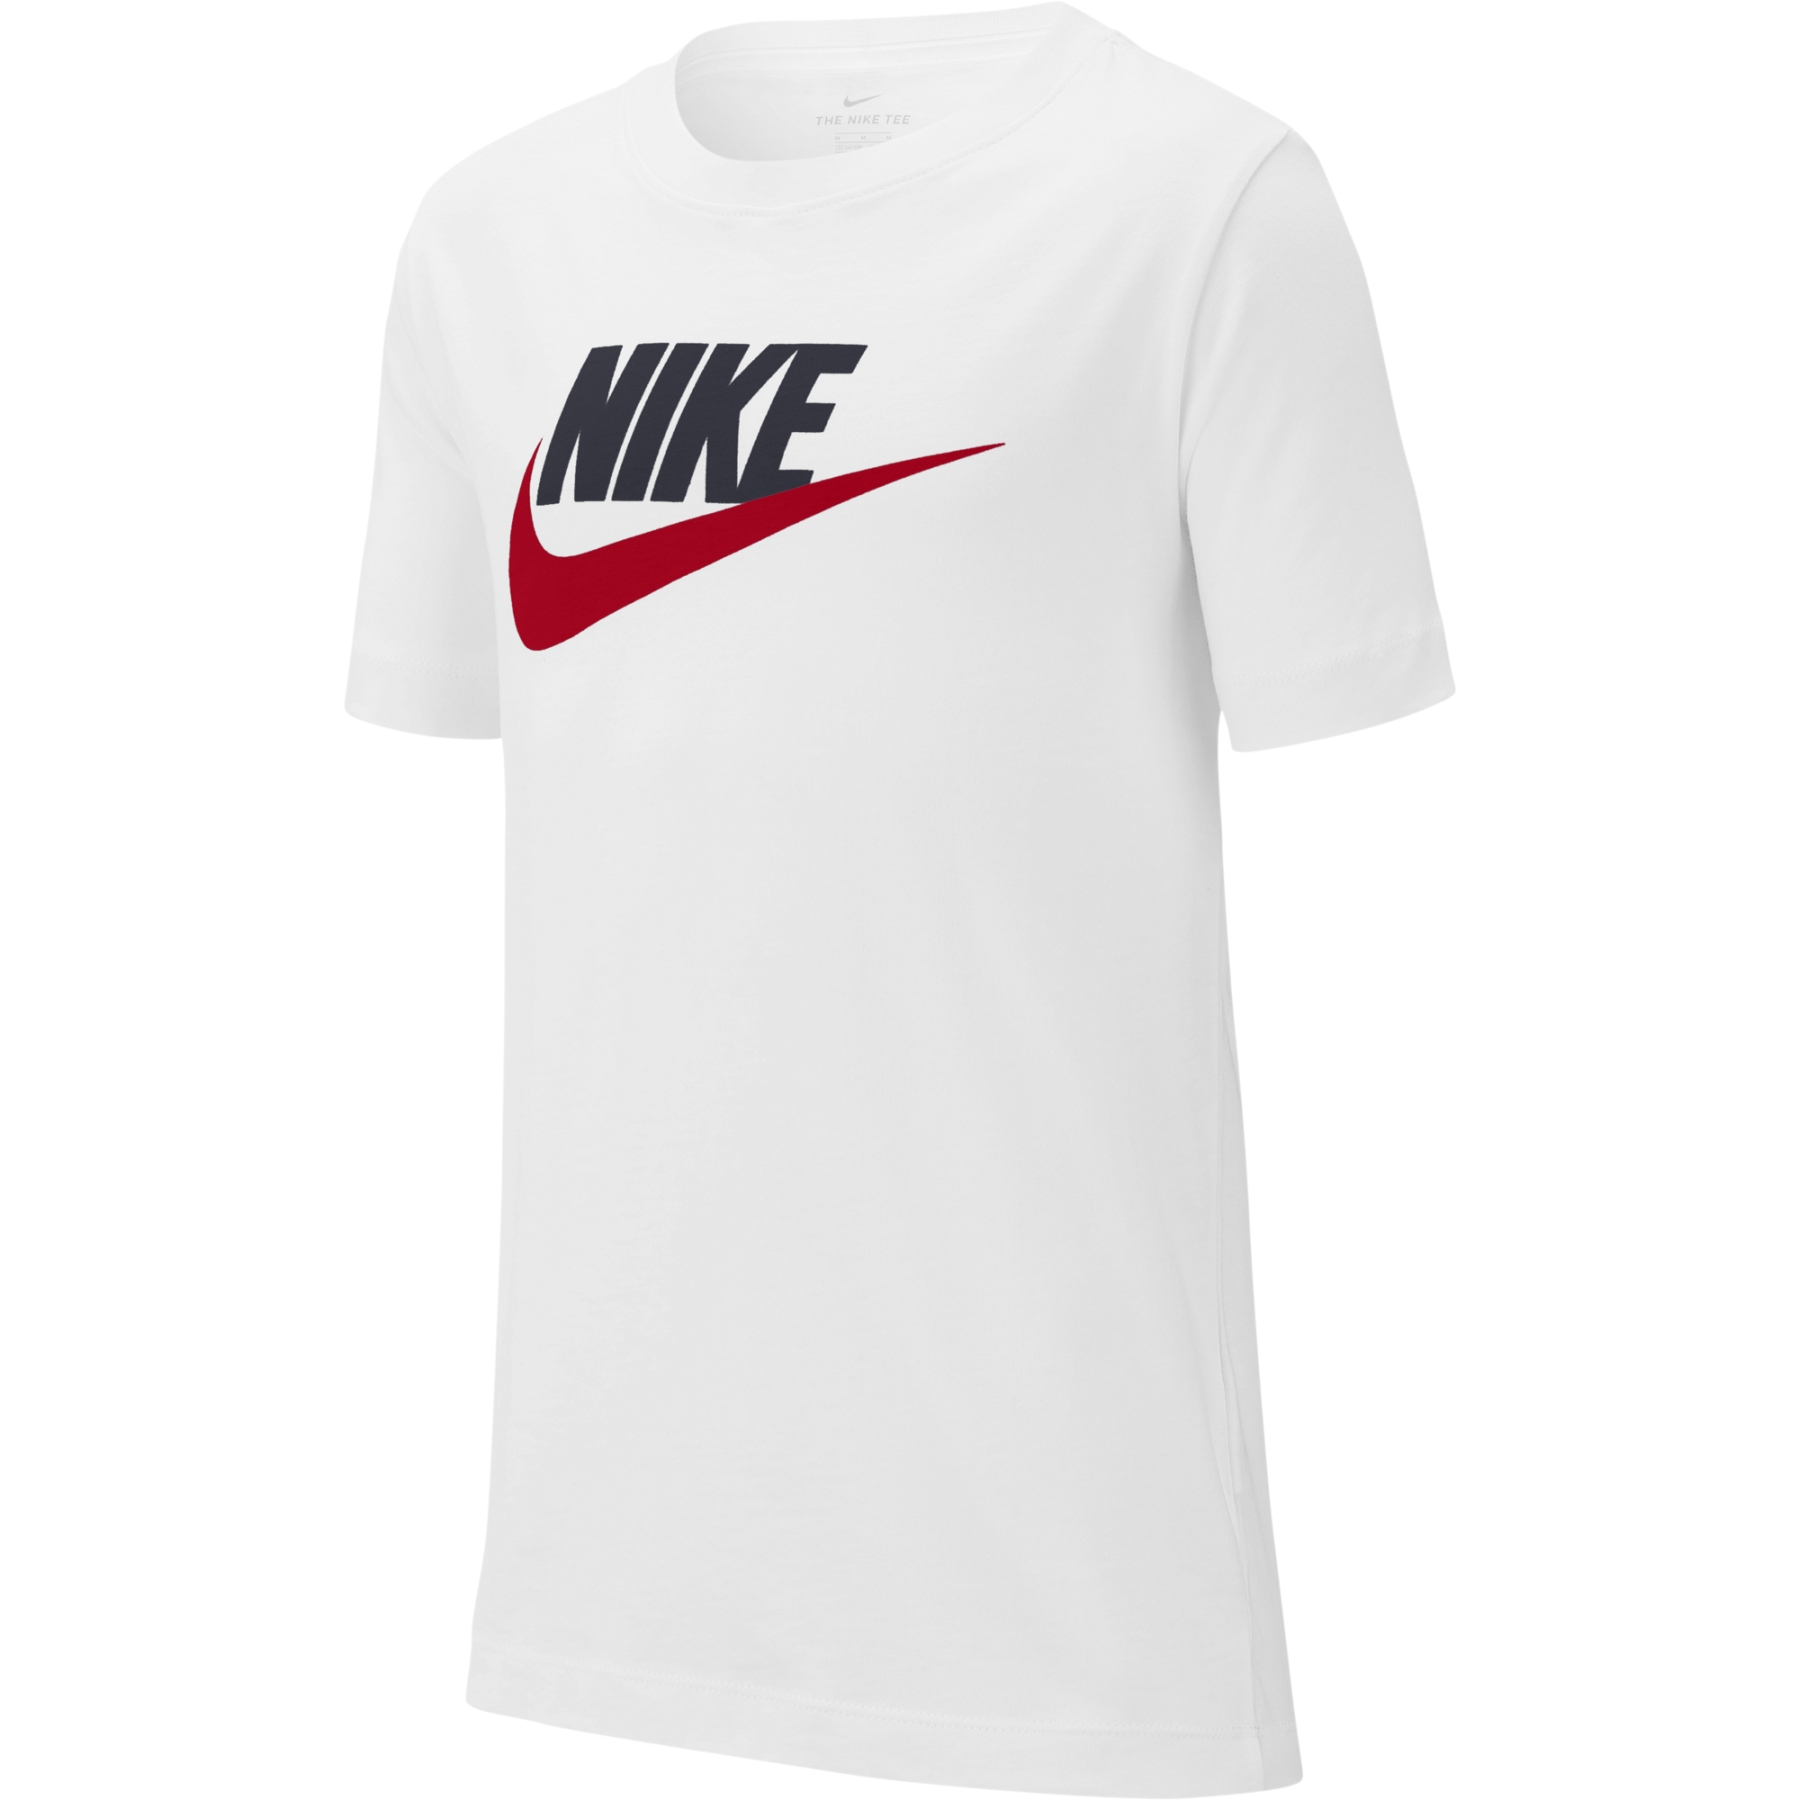 Produktbild von Nike Sportswear T-Shirt für ältere Kinder - weiss/obsidian/university red AR5252-107